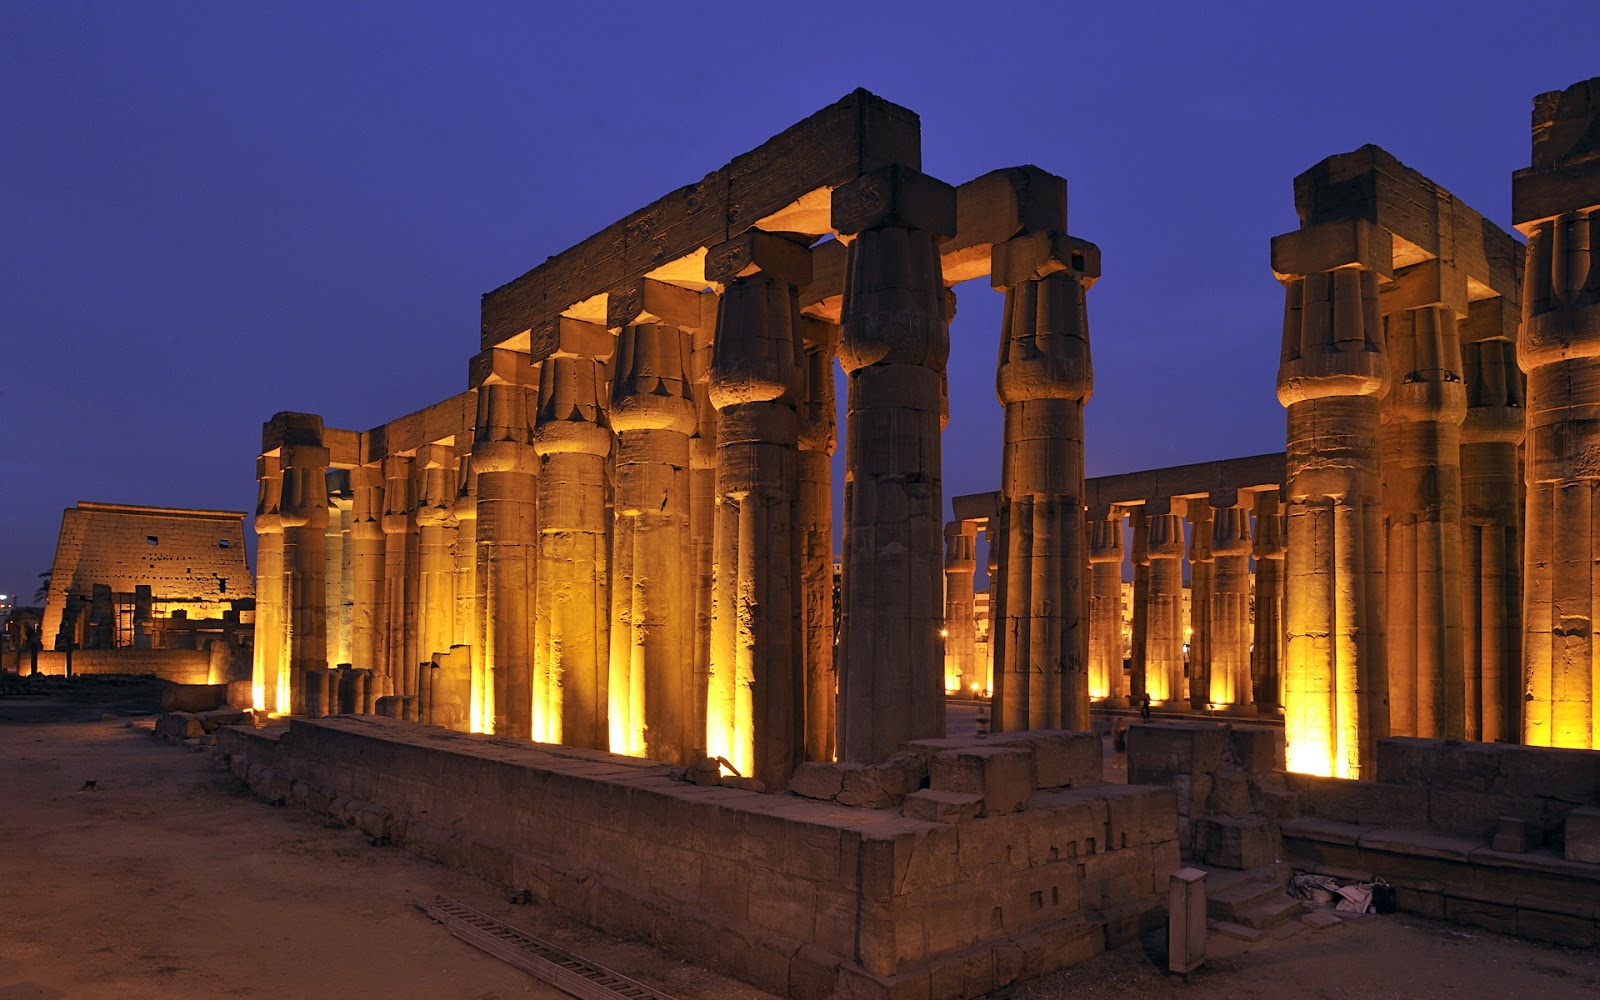 alte ägypten tapete,die architektur,alte geschichte,gebäude,ägyptischer tempel,säule